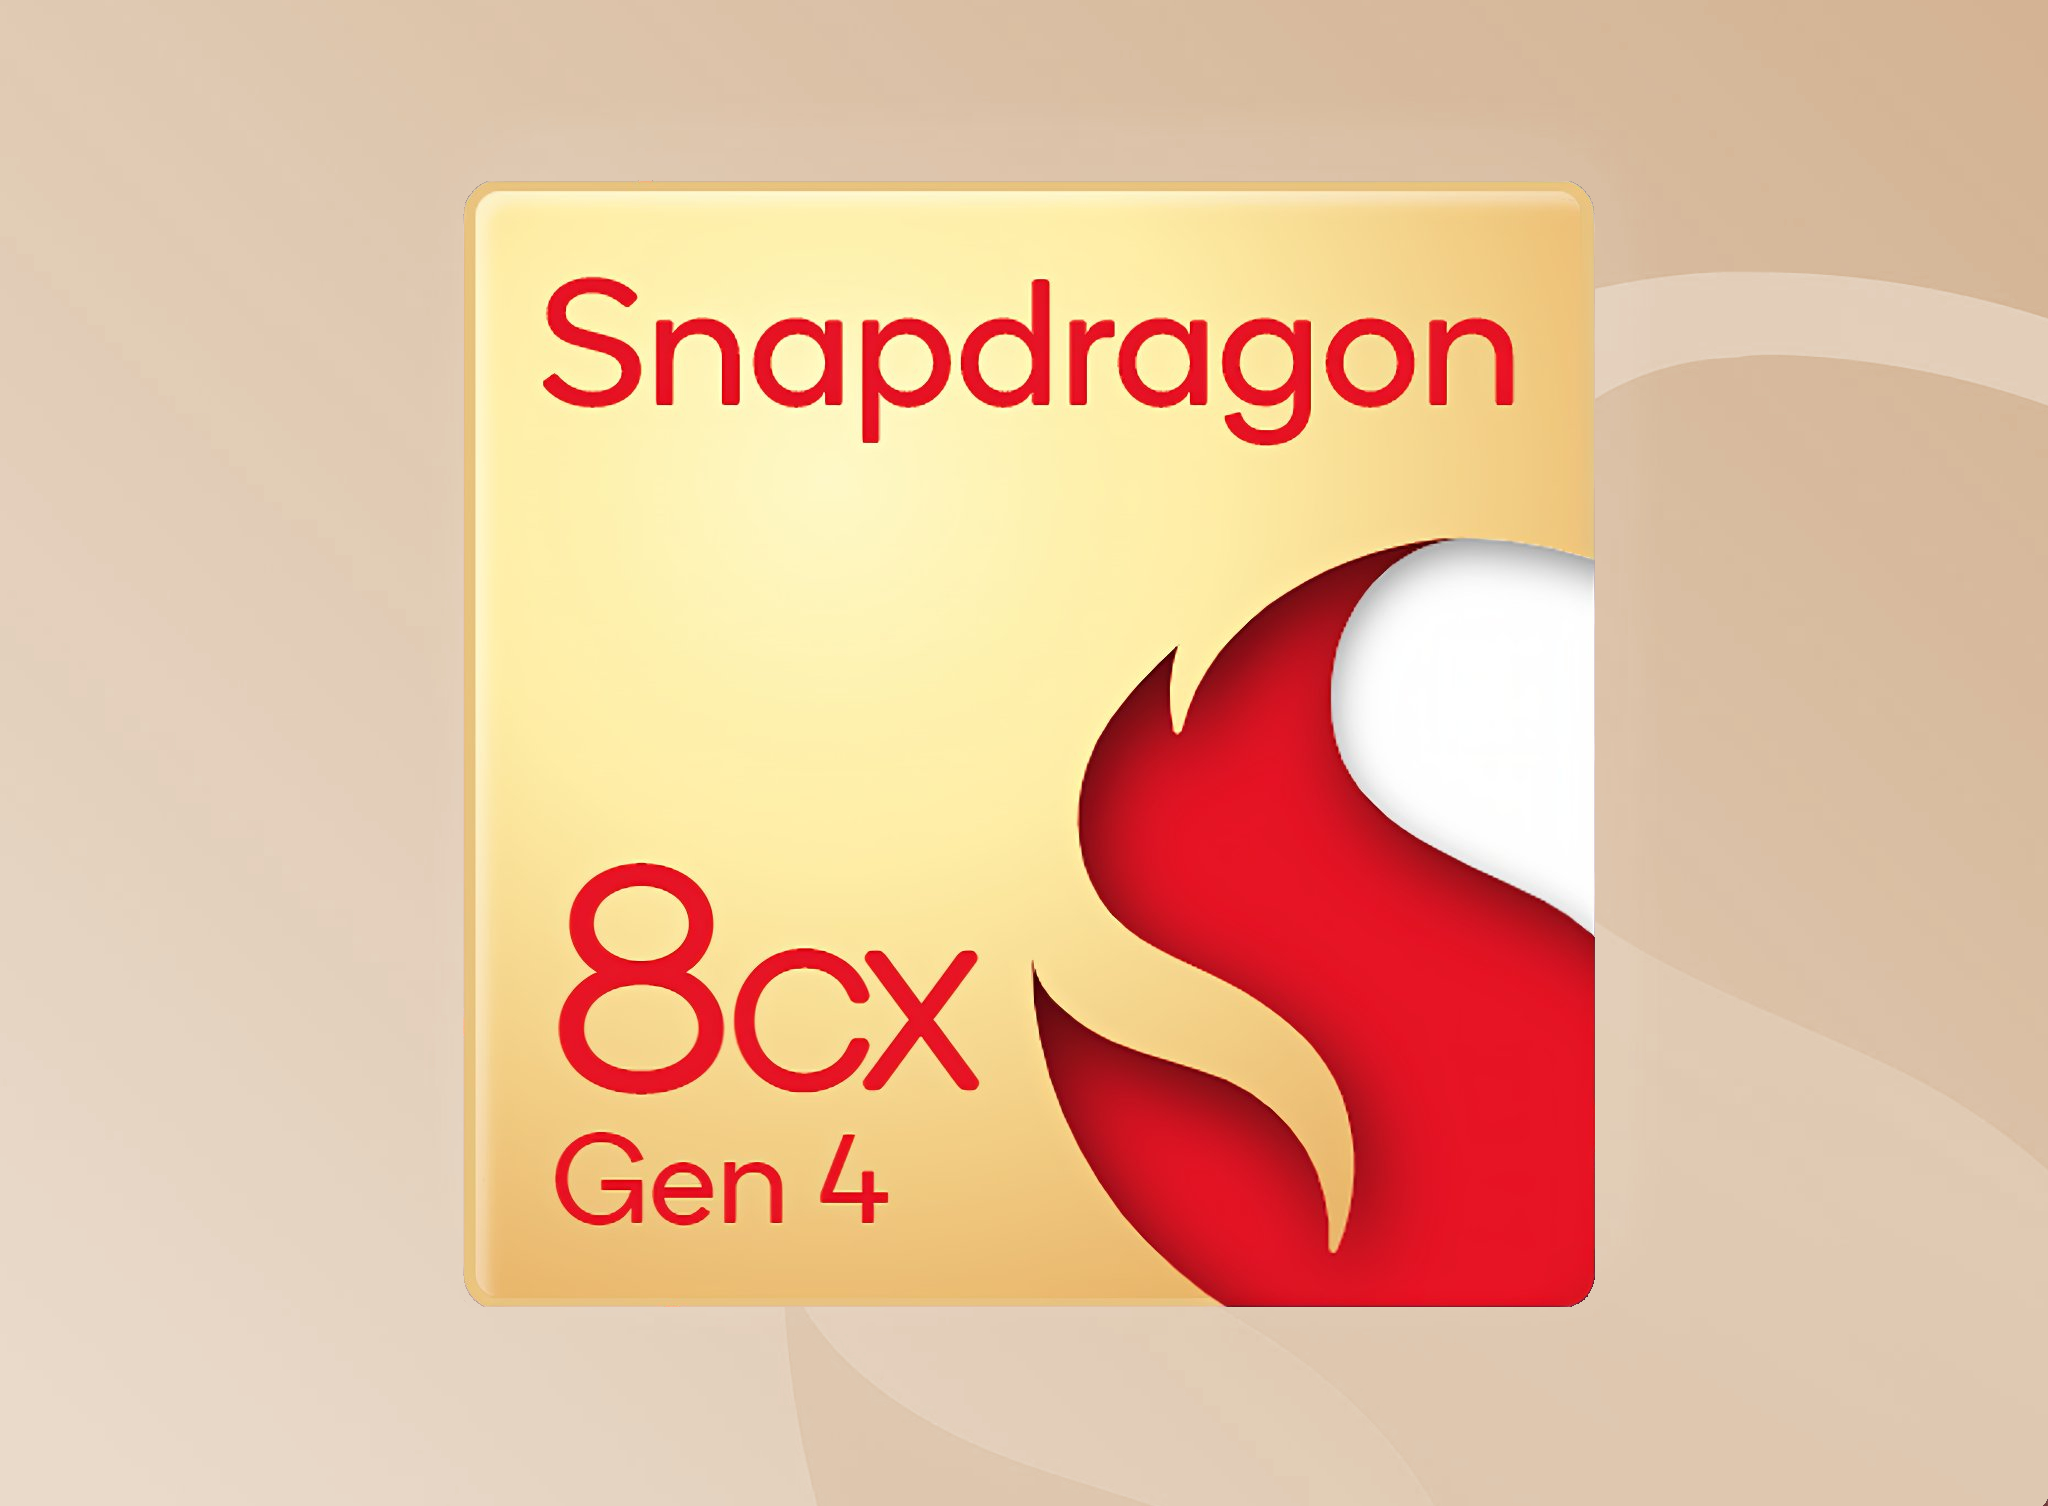 Snapdragon 8cx Gen 4